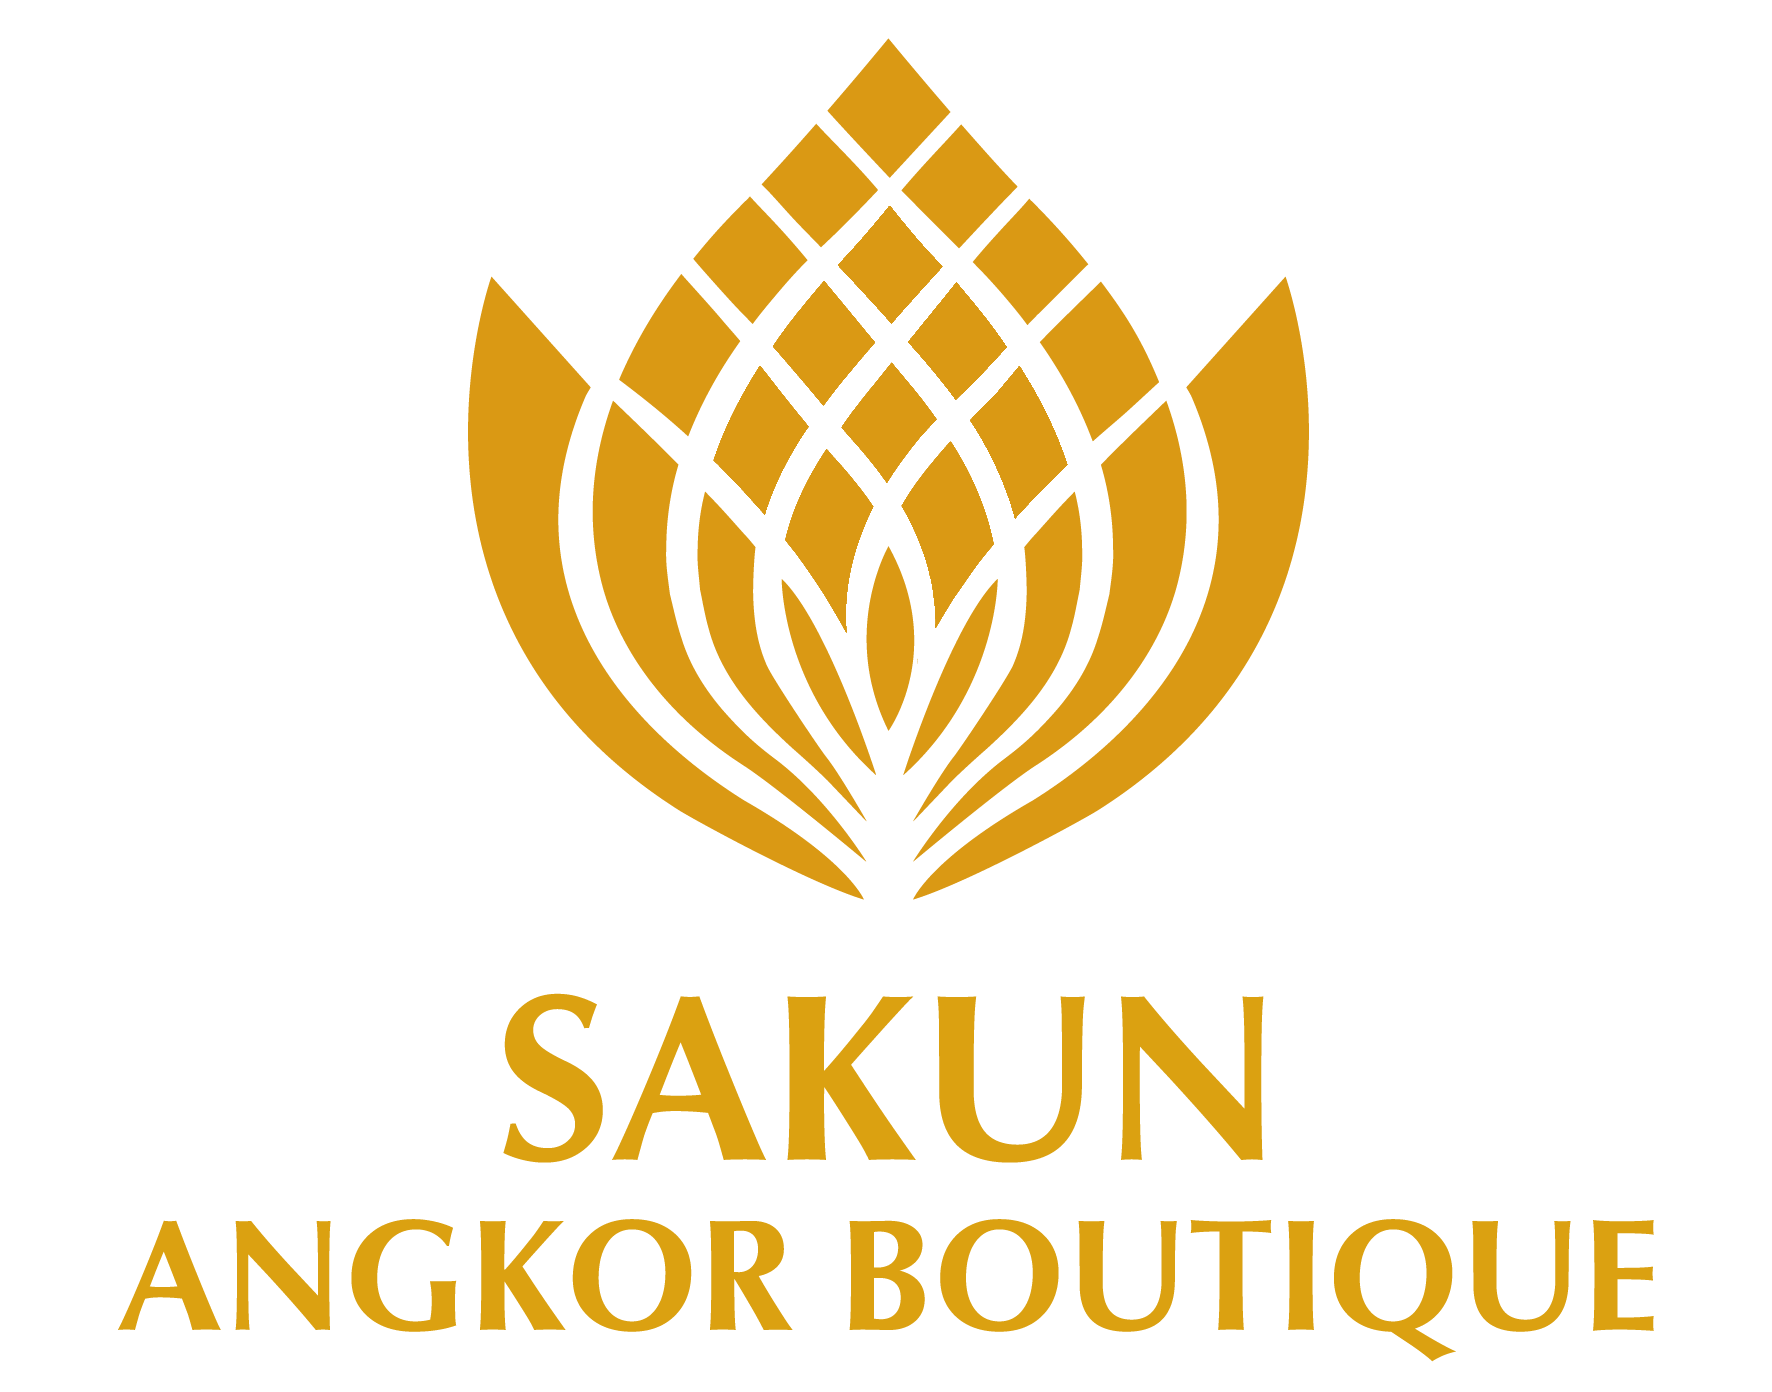 The logo of the Sakun Angkor Boutique Hotel.